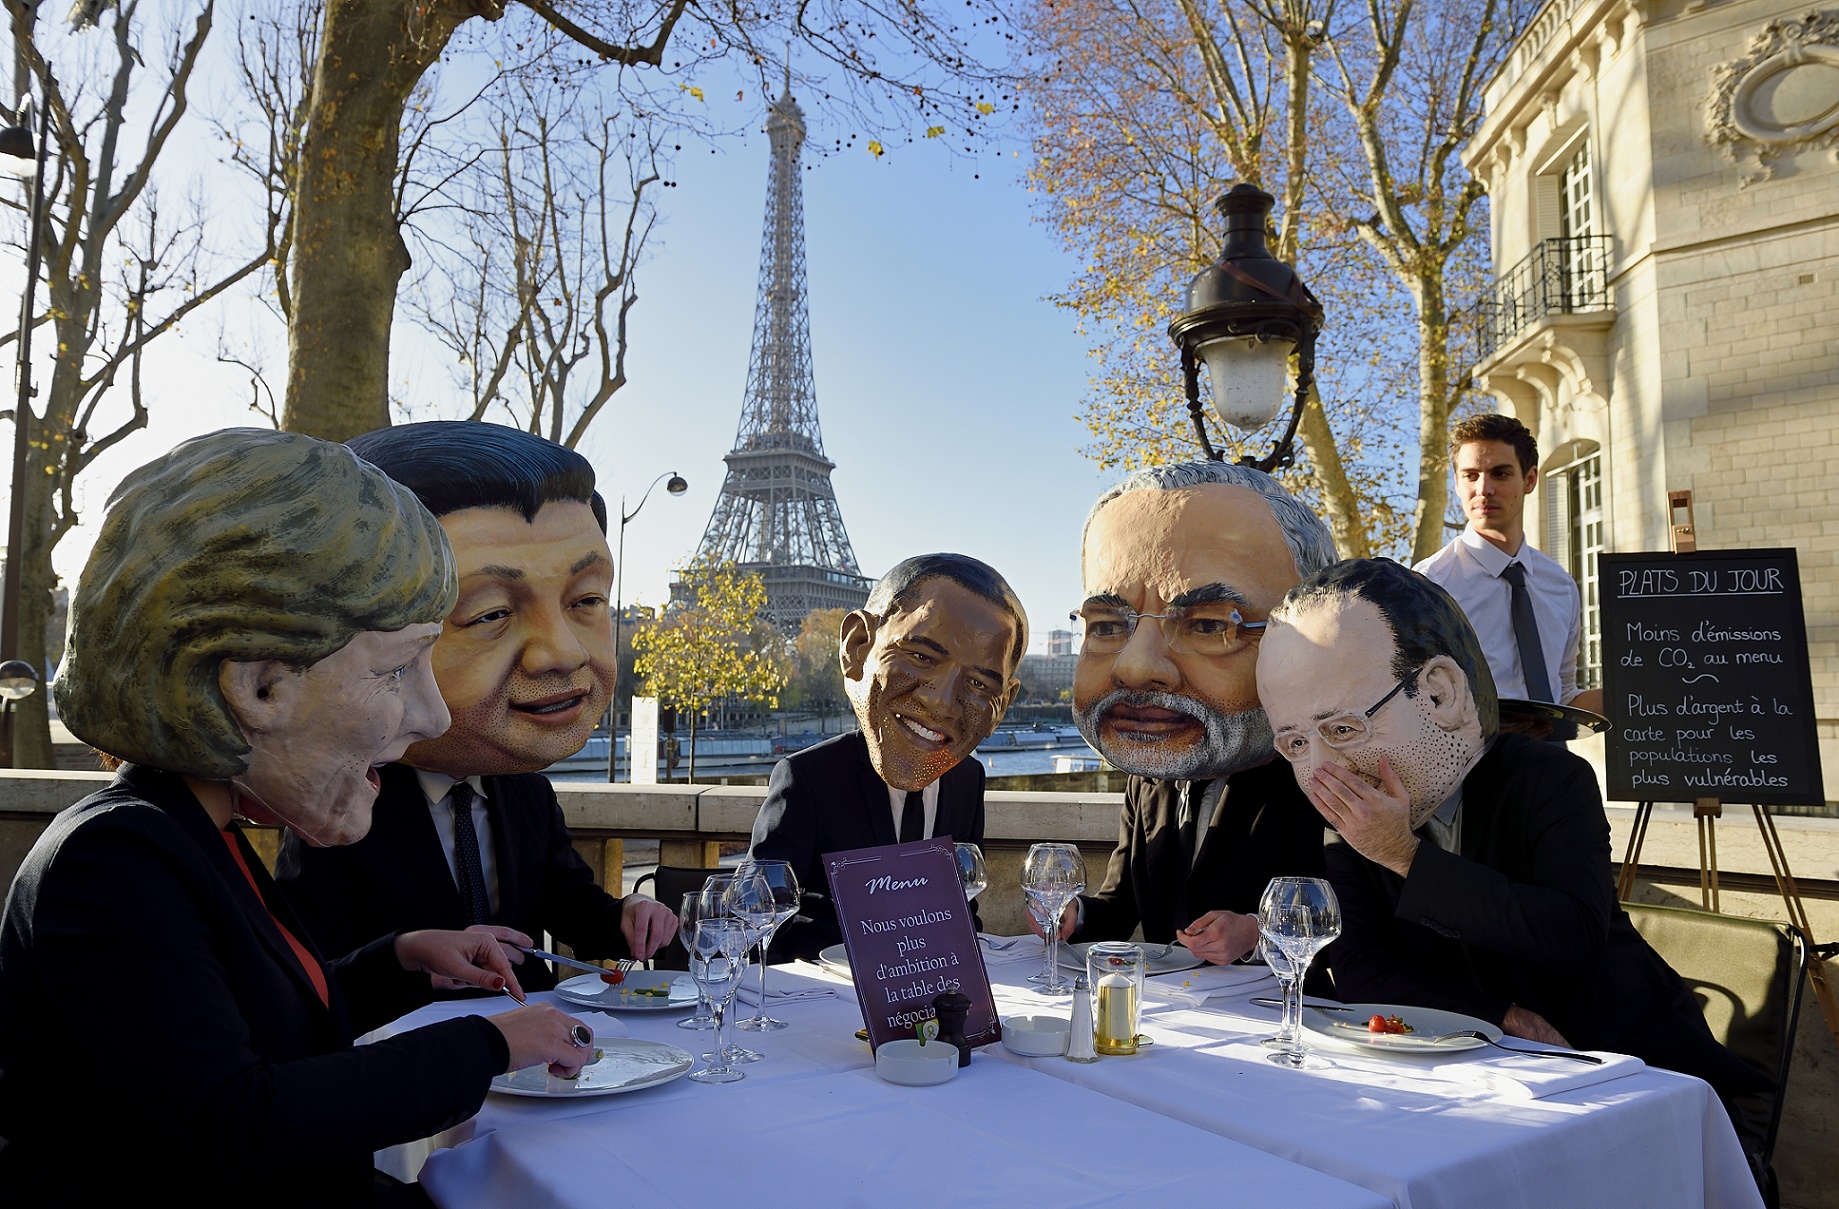 Café organizado pelo ONG OXFAM reune alguns "líderes mundiais": Angela Merkel (Alemanha), Xi Jinping (China), Barack Obama (EUA), Narendra Modi (Índia) e Francois Hollande (França)